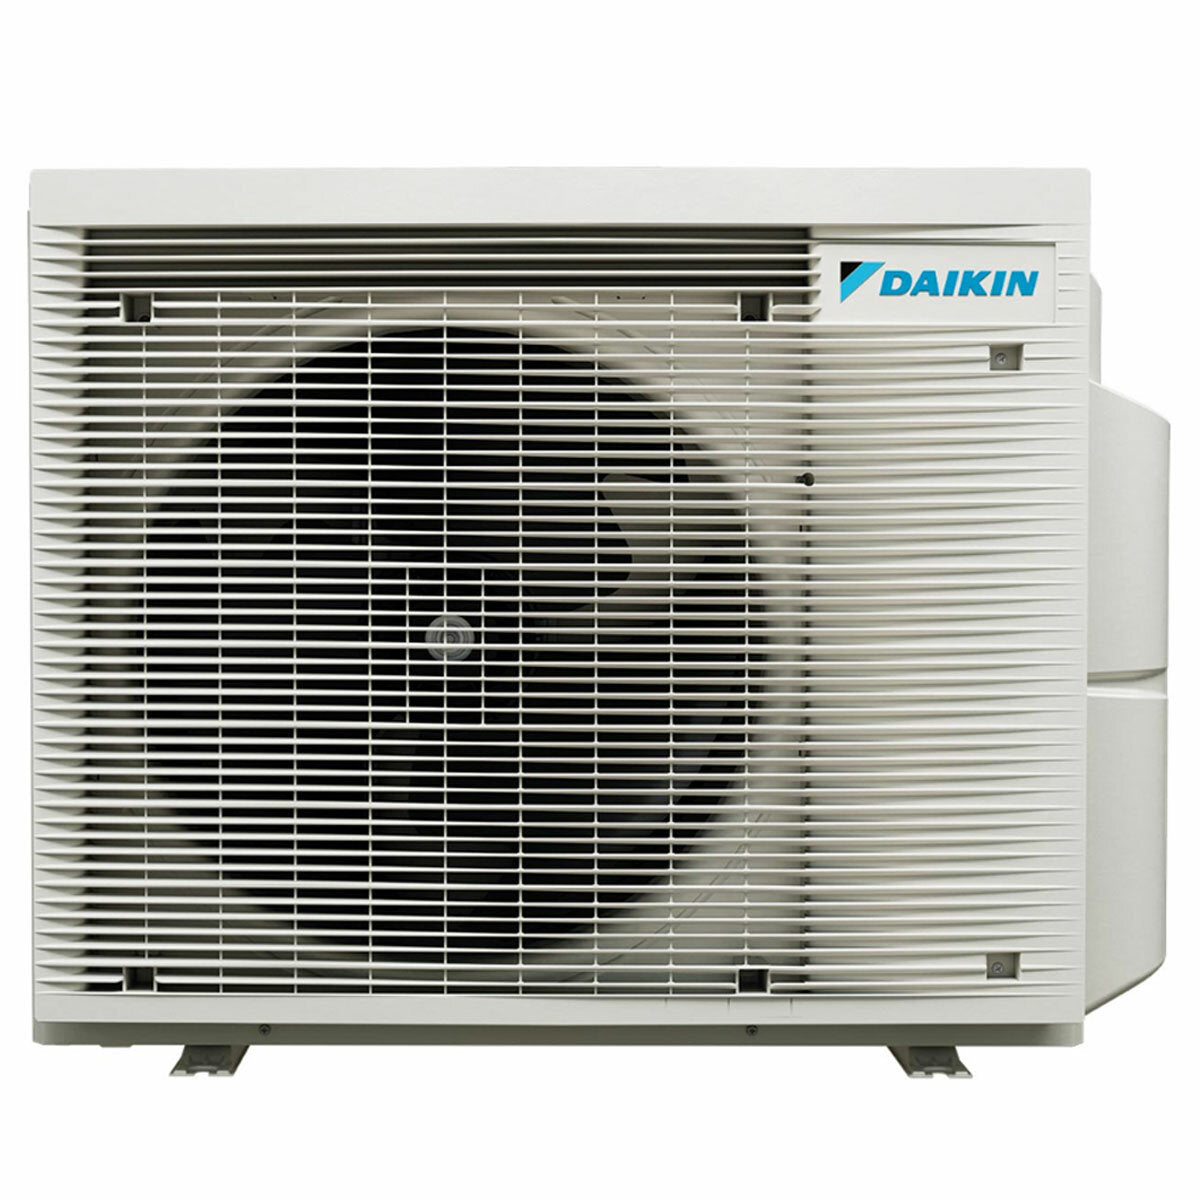 Daikin Stylish Silver Penta-Split-Klimaanlage 9000+9000+9000+9000+18000 BTU Inverter A++ WLAN-Außeneinheit 7,8 kW 